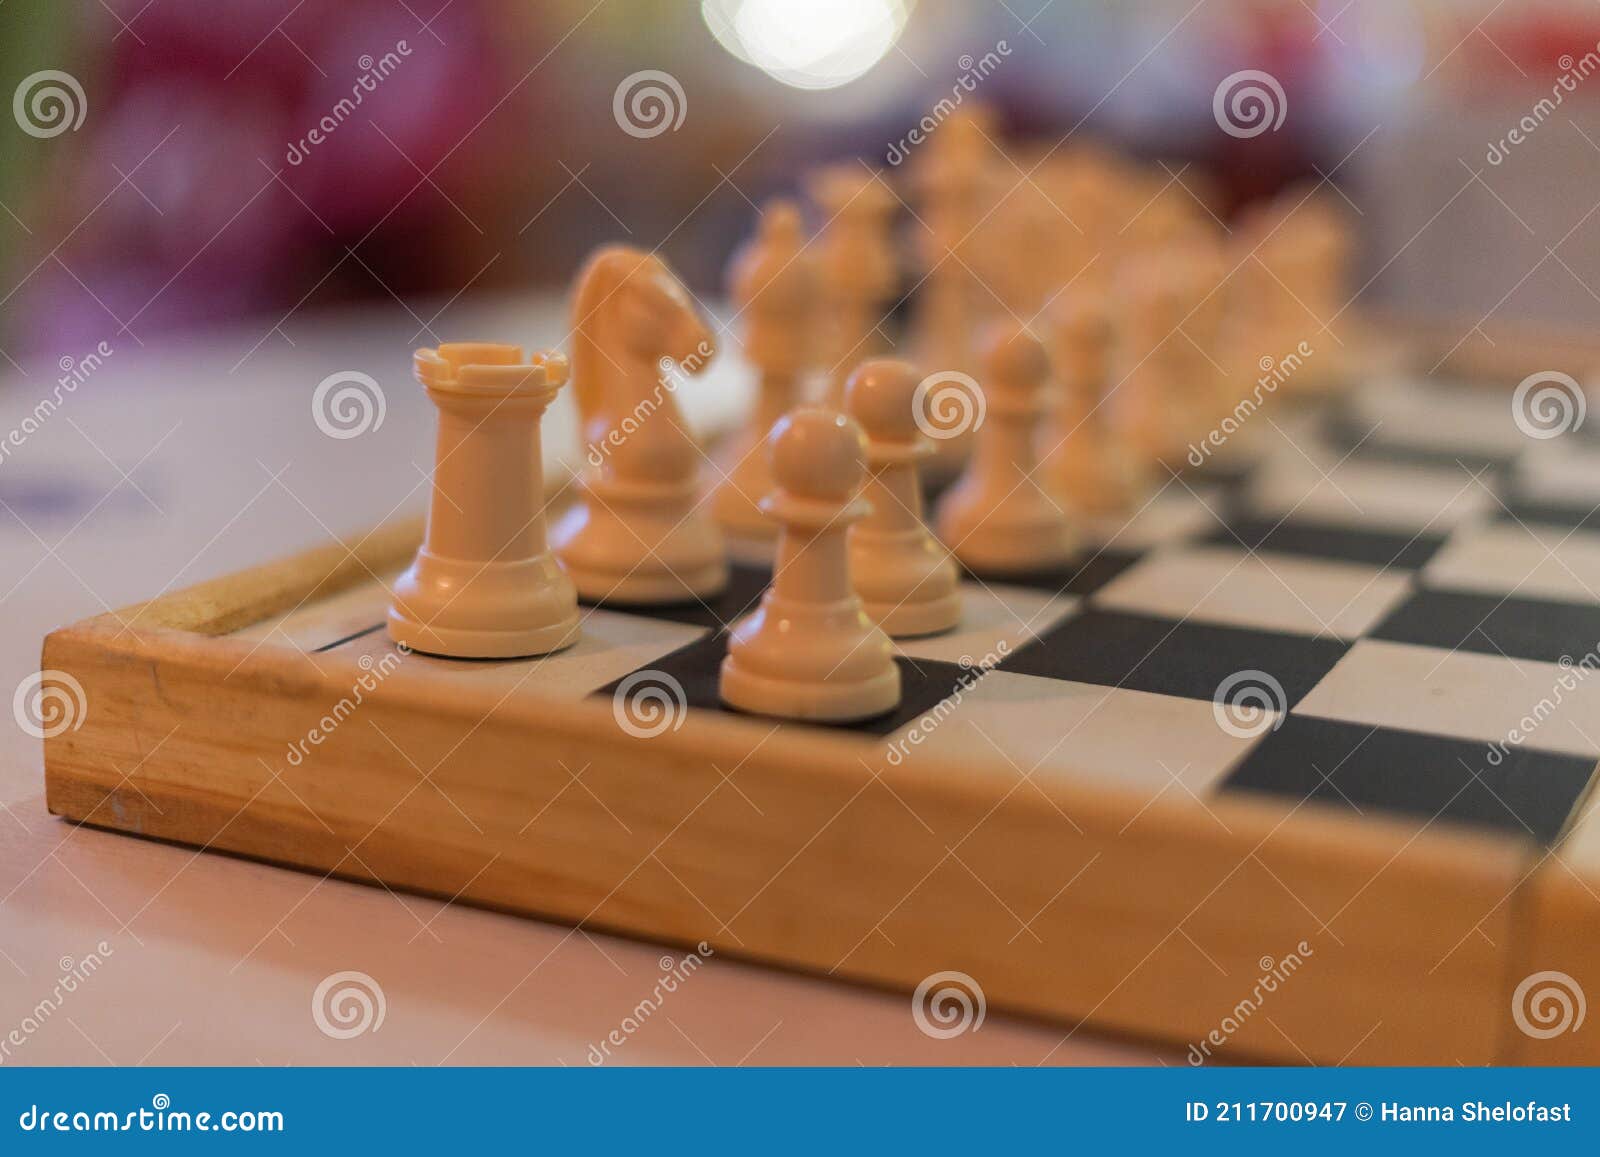 Ideias de negócios de jogos de tabuleiro de xadrez e conceito de